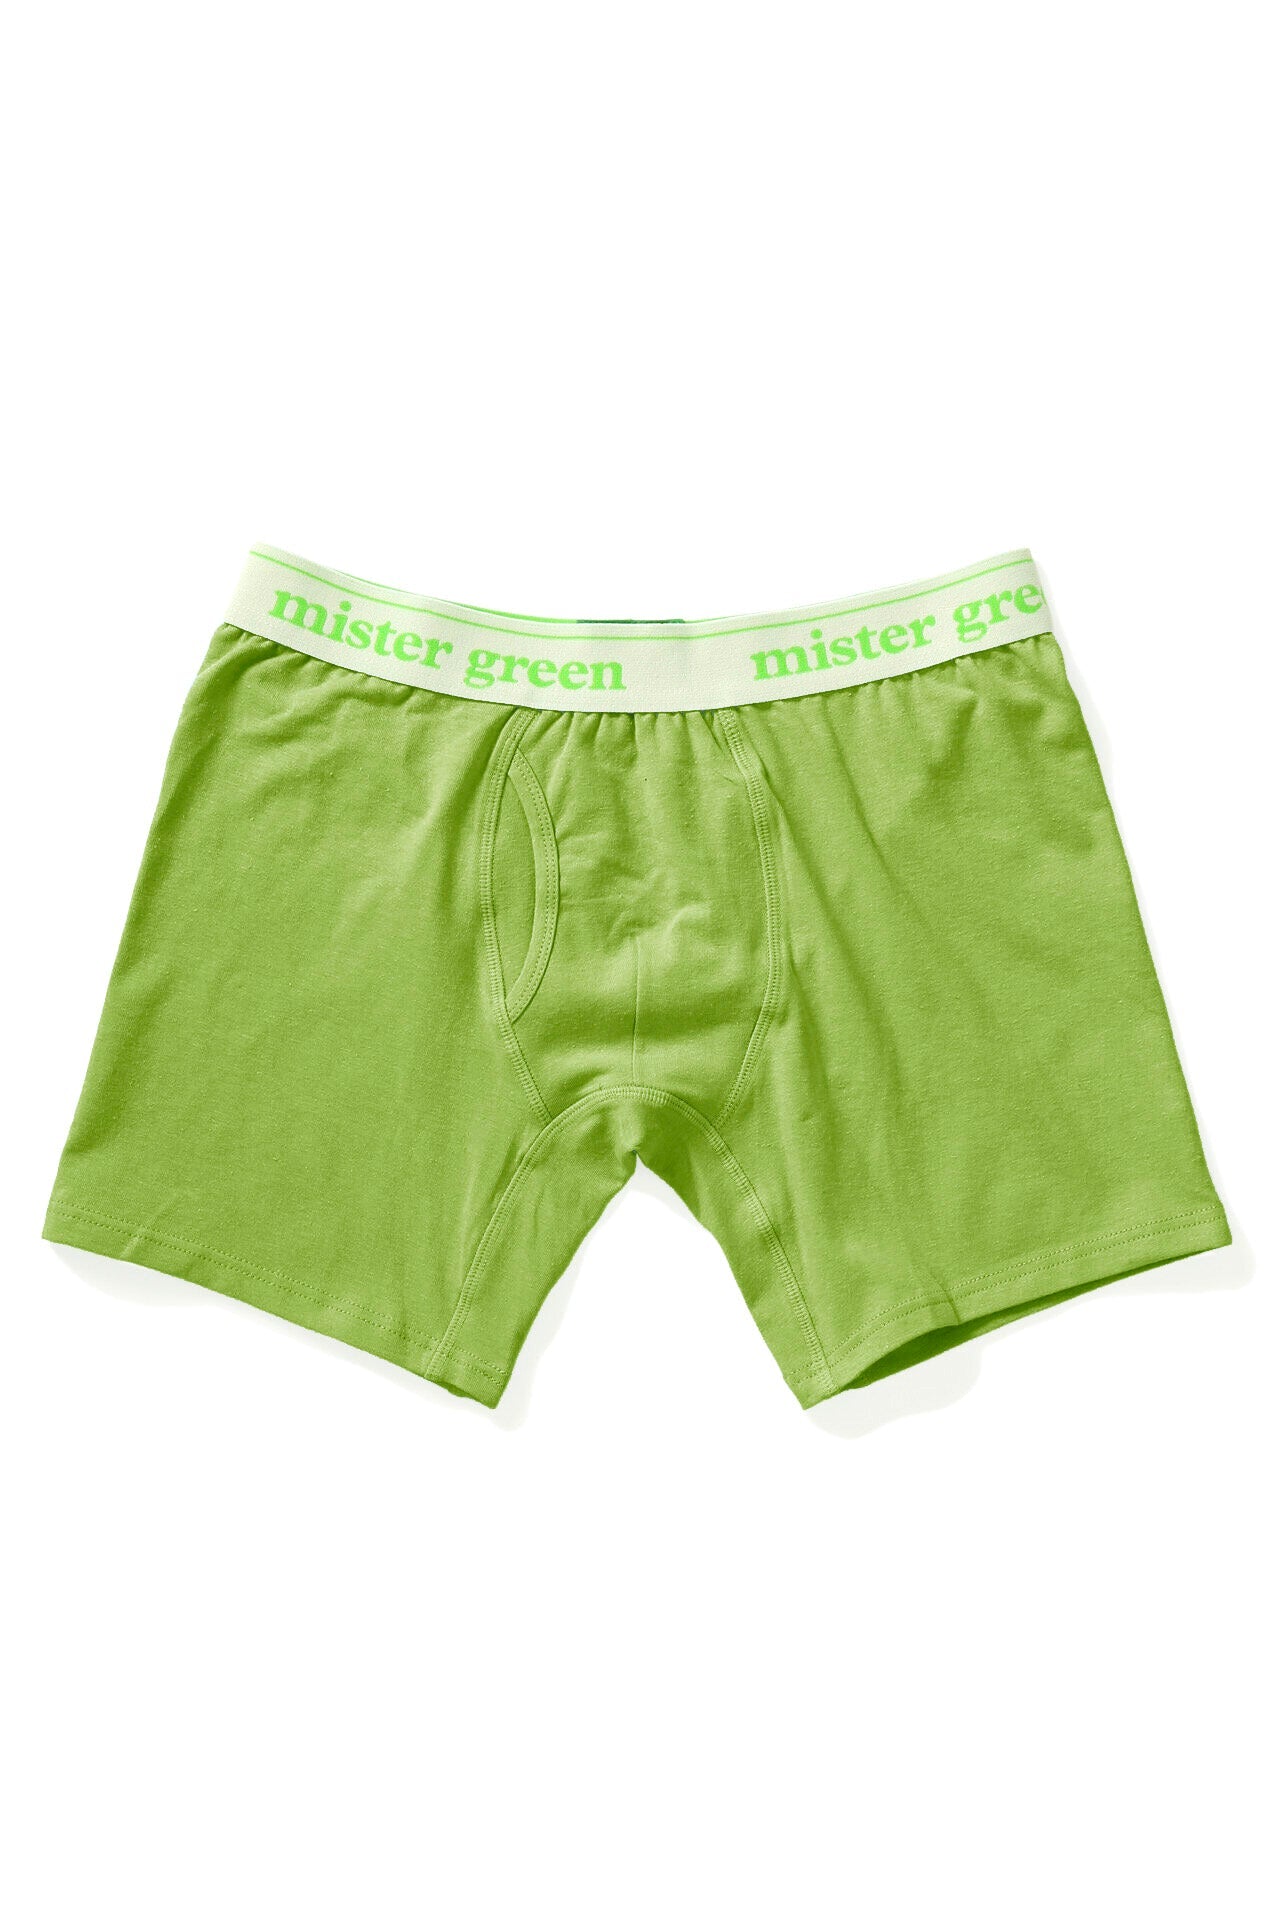 Wordmark Hemp Underwear - 2 Pack-Mister Green-Mister Green